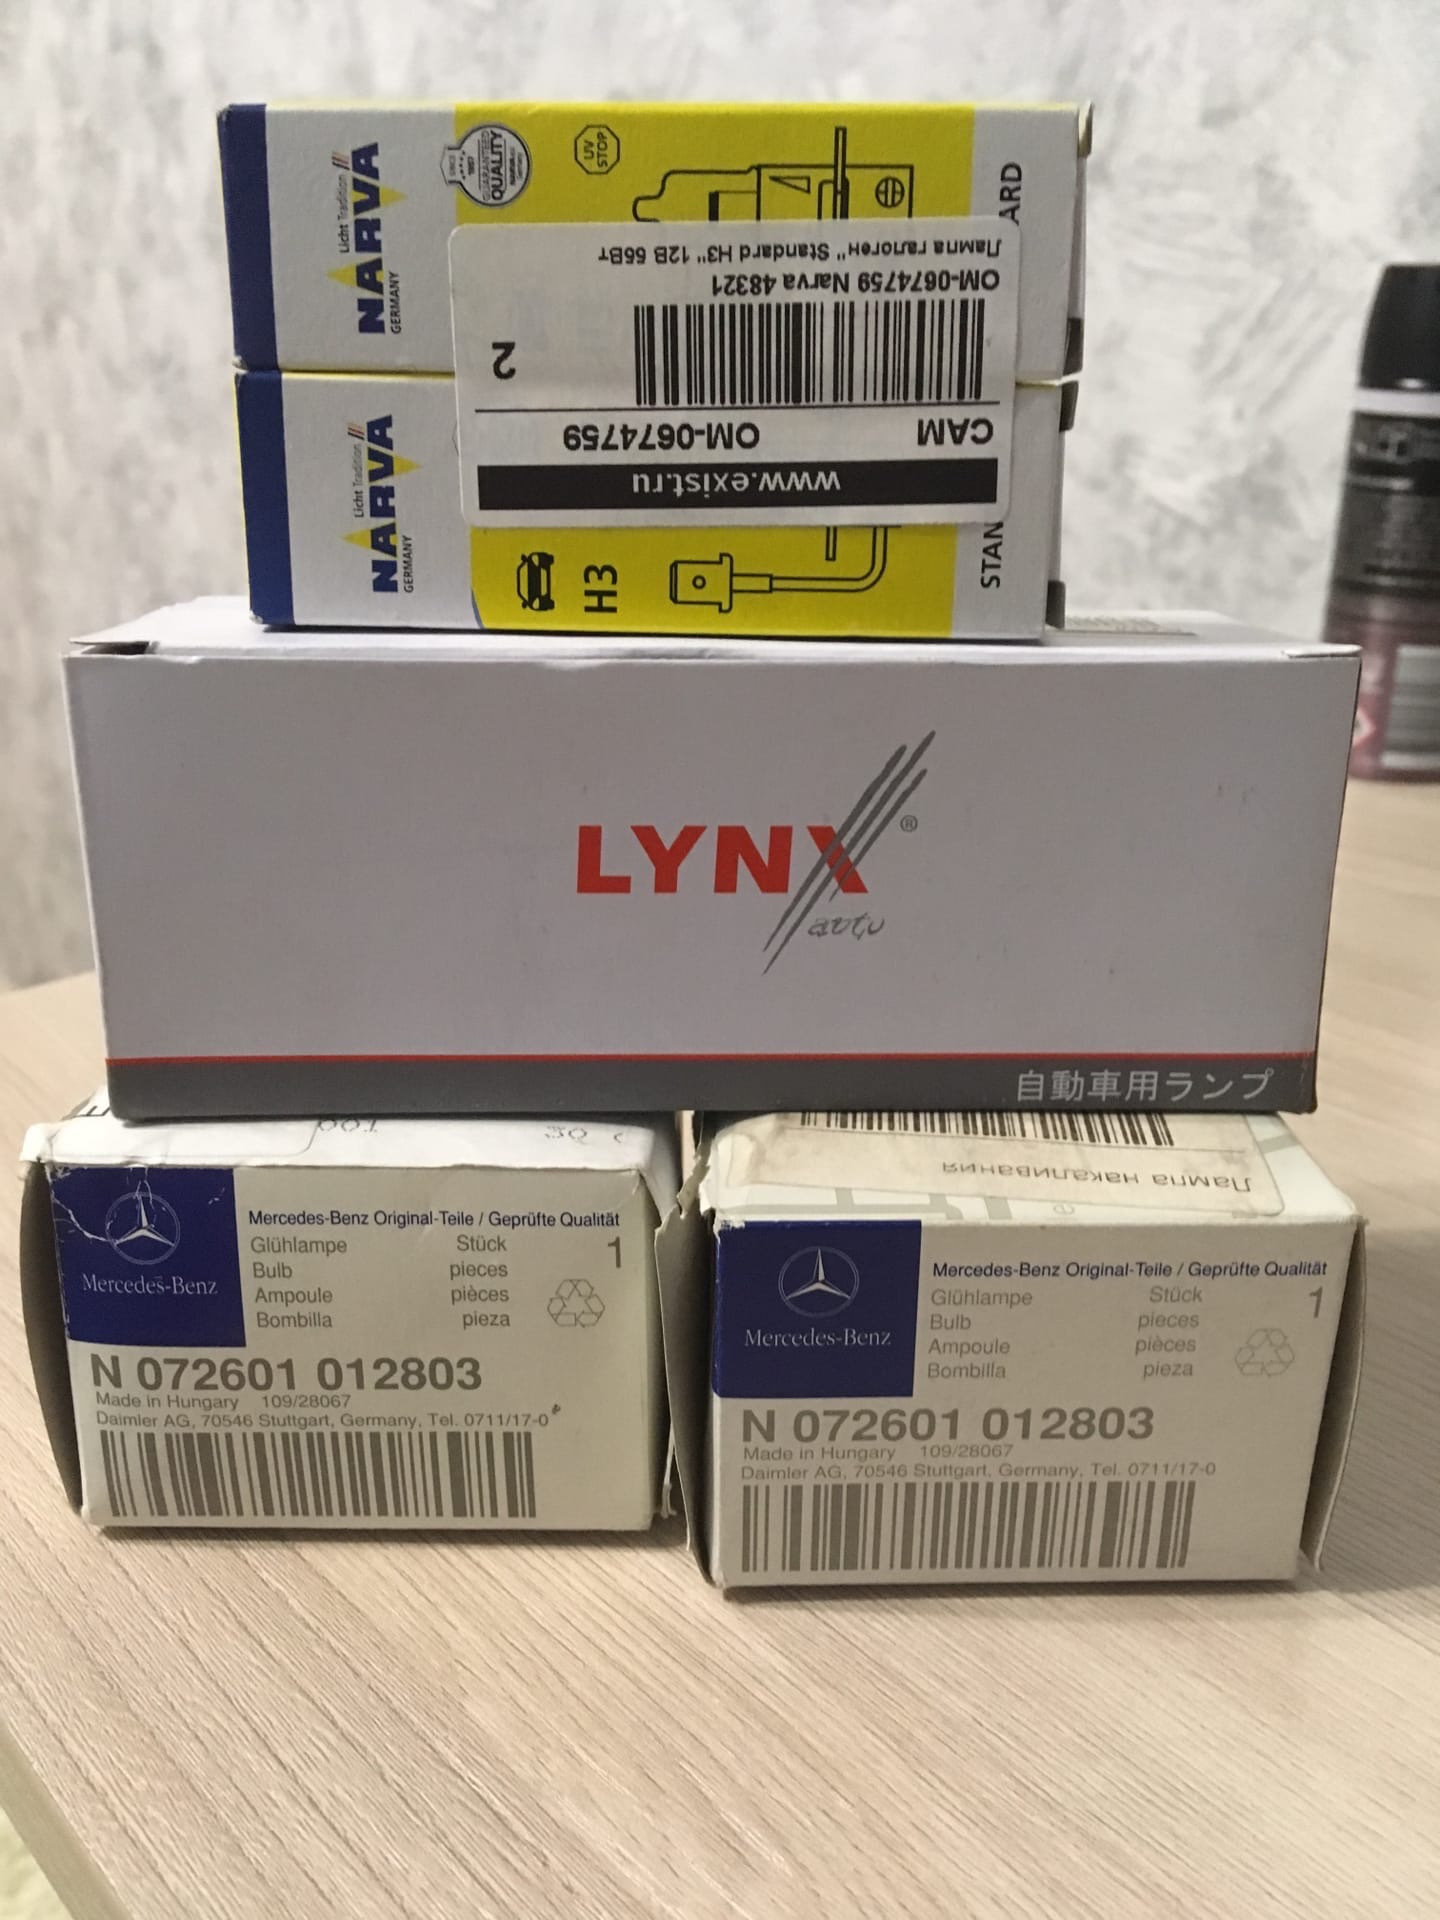 Производитель lynx отзывы